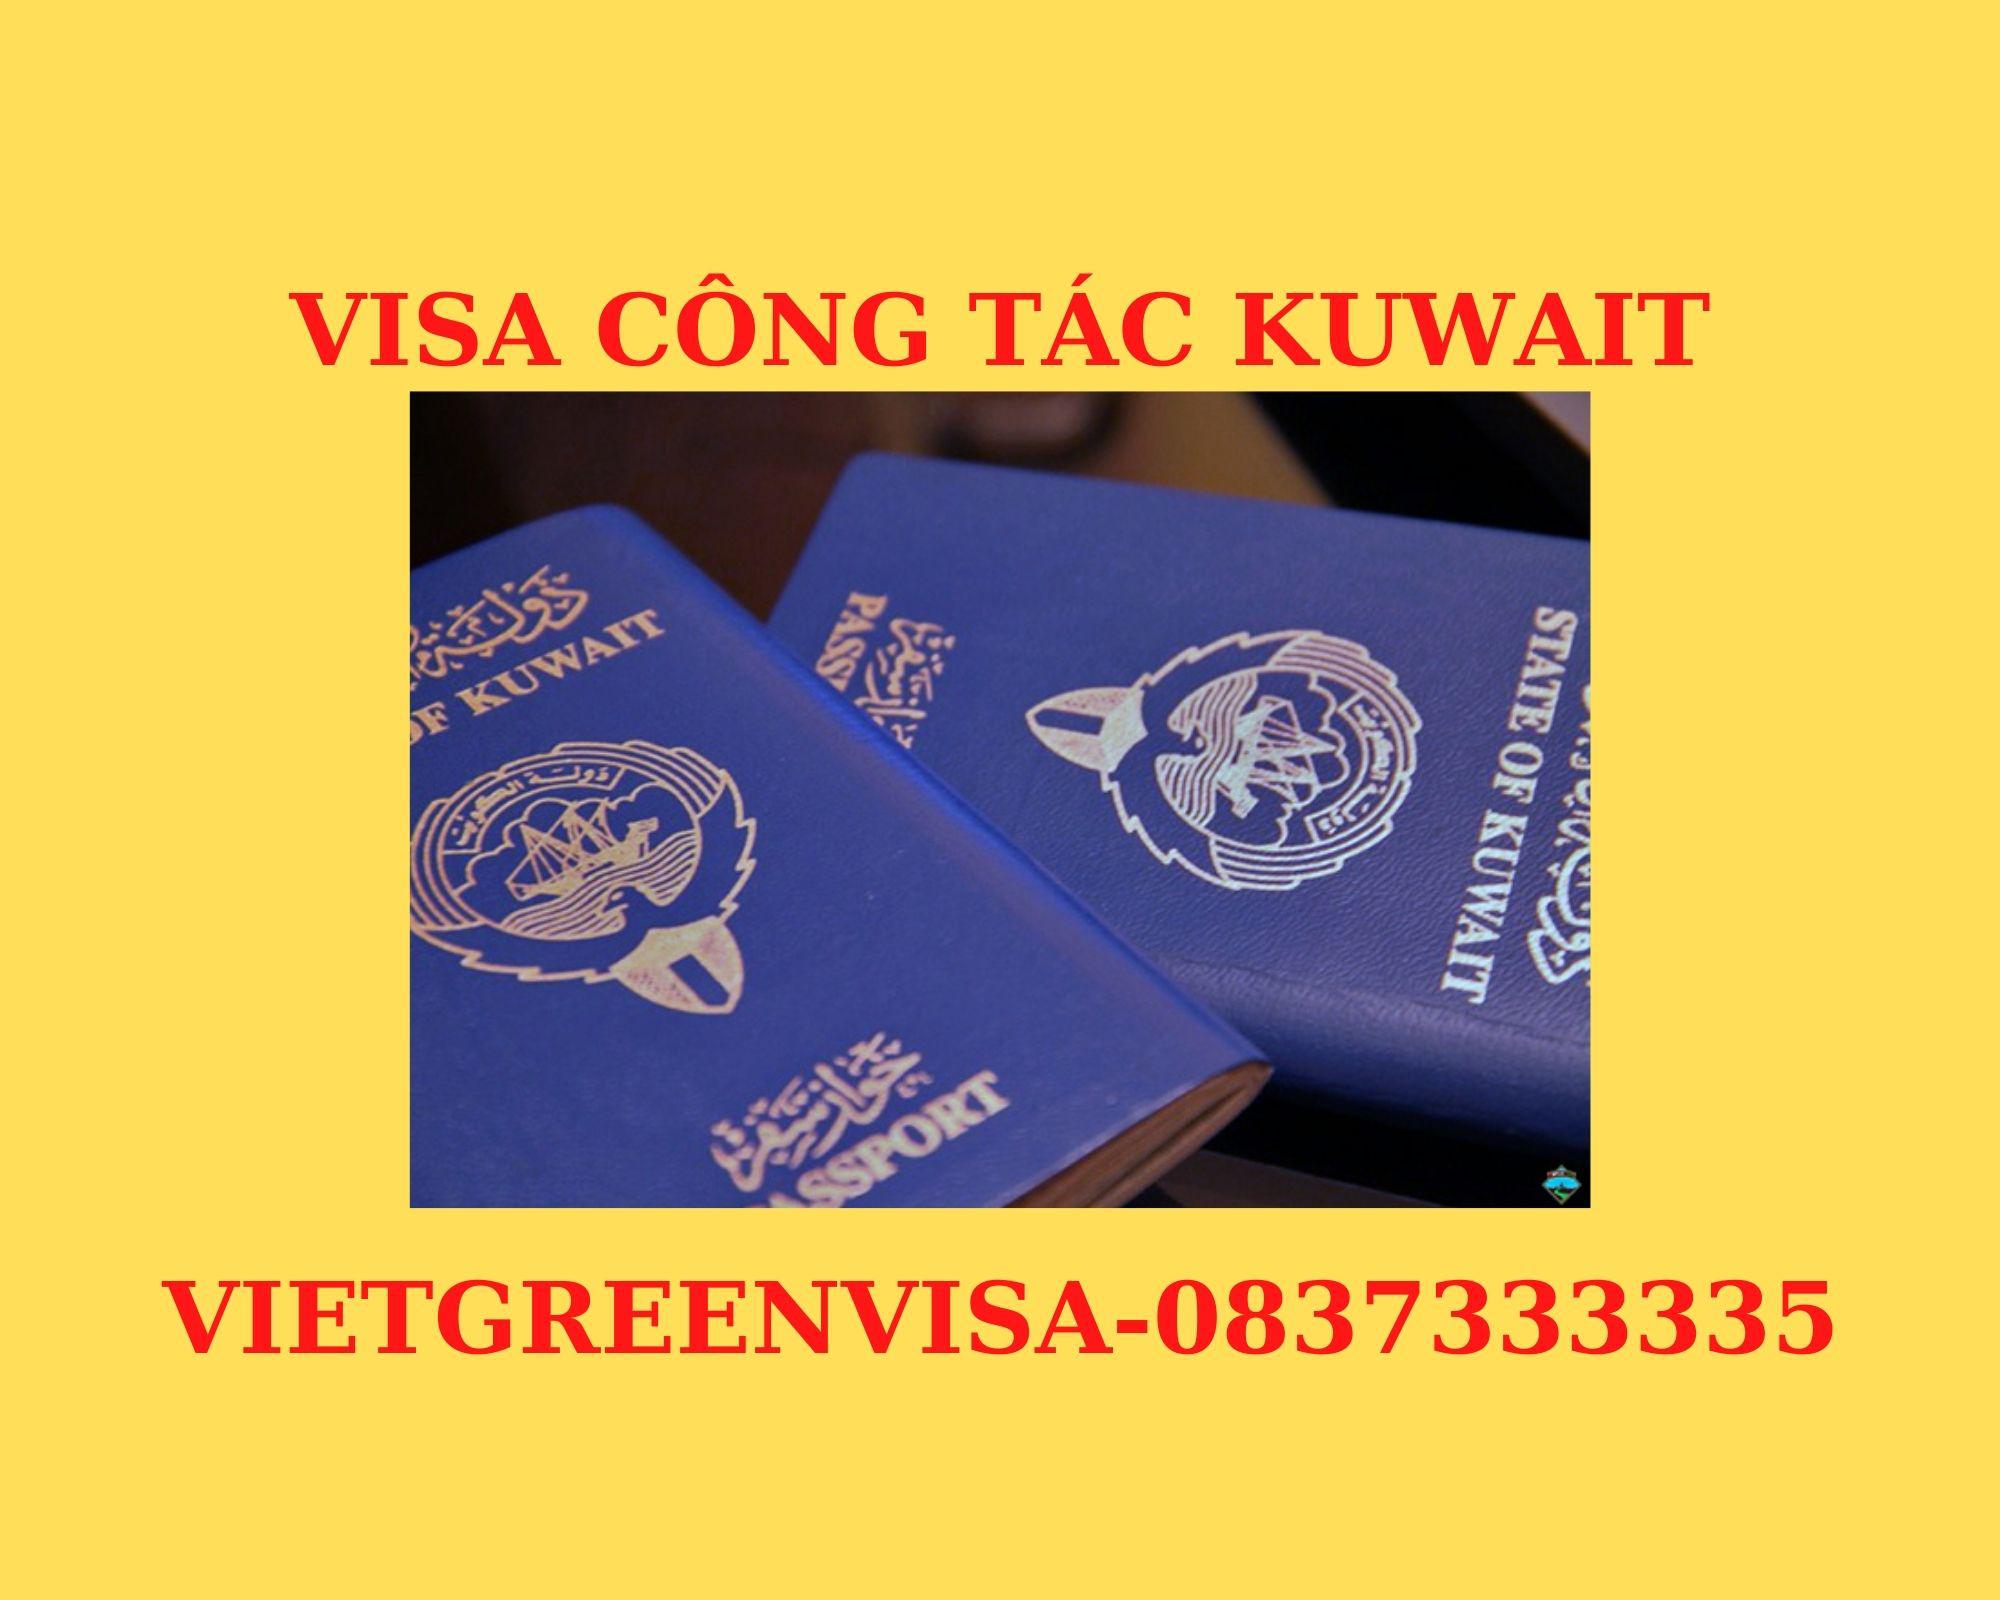 Dịch vụ visa Kuwait công tác dự hội chợ